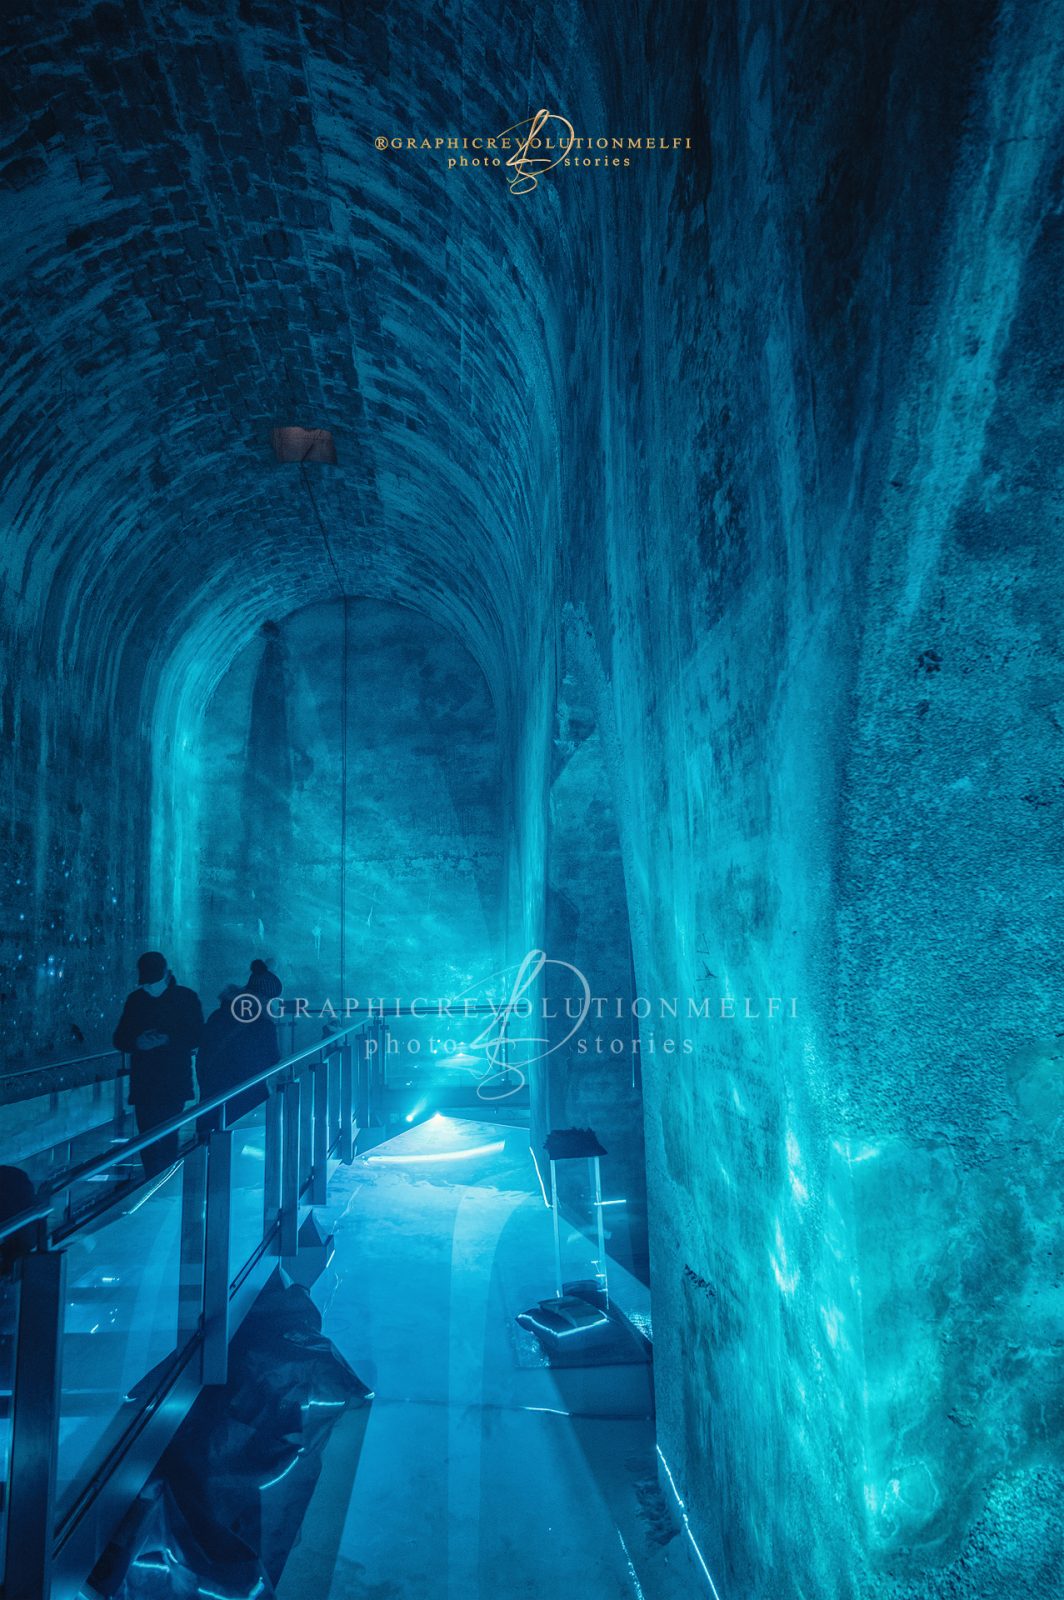 Melfi Natale 2021 le foto delle luminarie e videomapping cisterna del castello di melfi